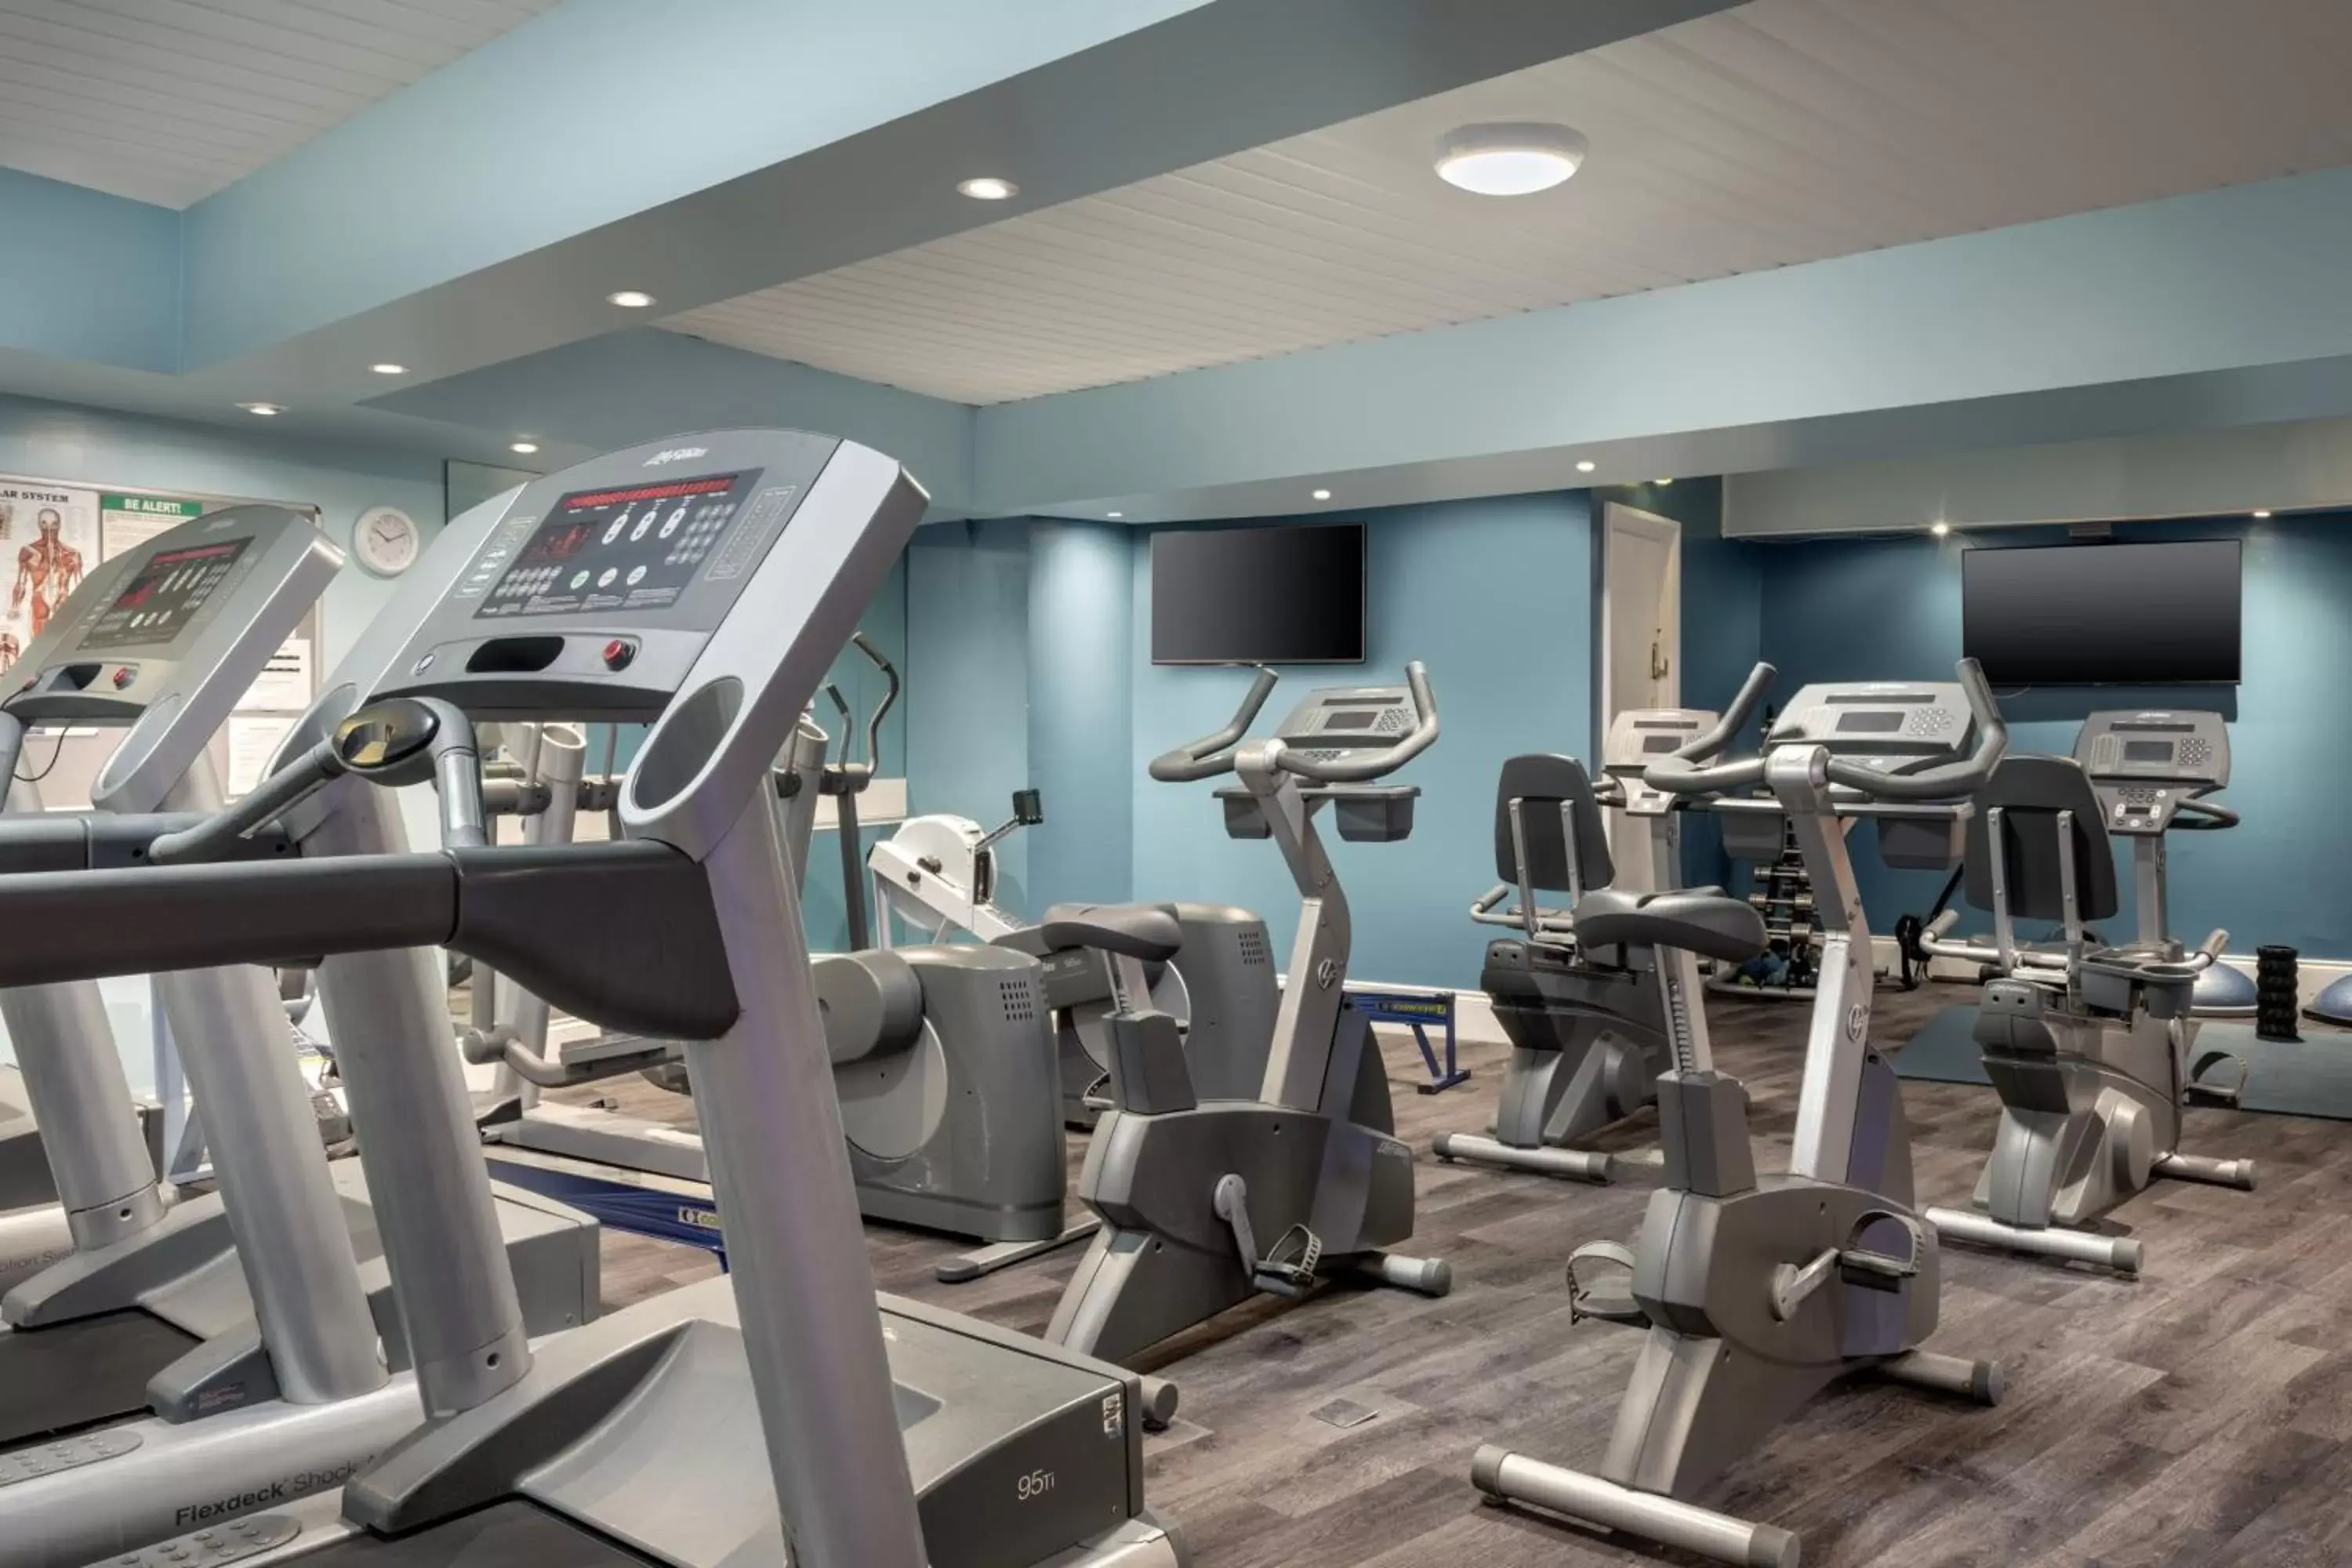 Fitness centre/facilities, Fitness Center/Facilities in Delta Hotels by Marriott Edinburgh